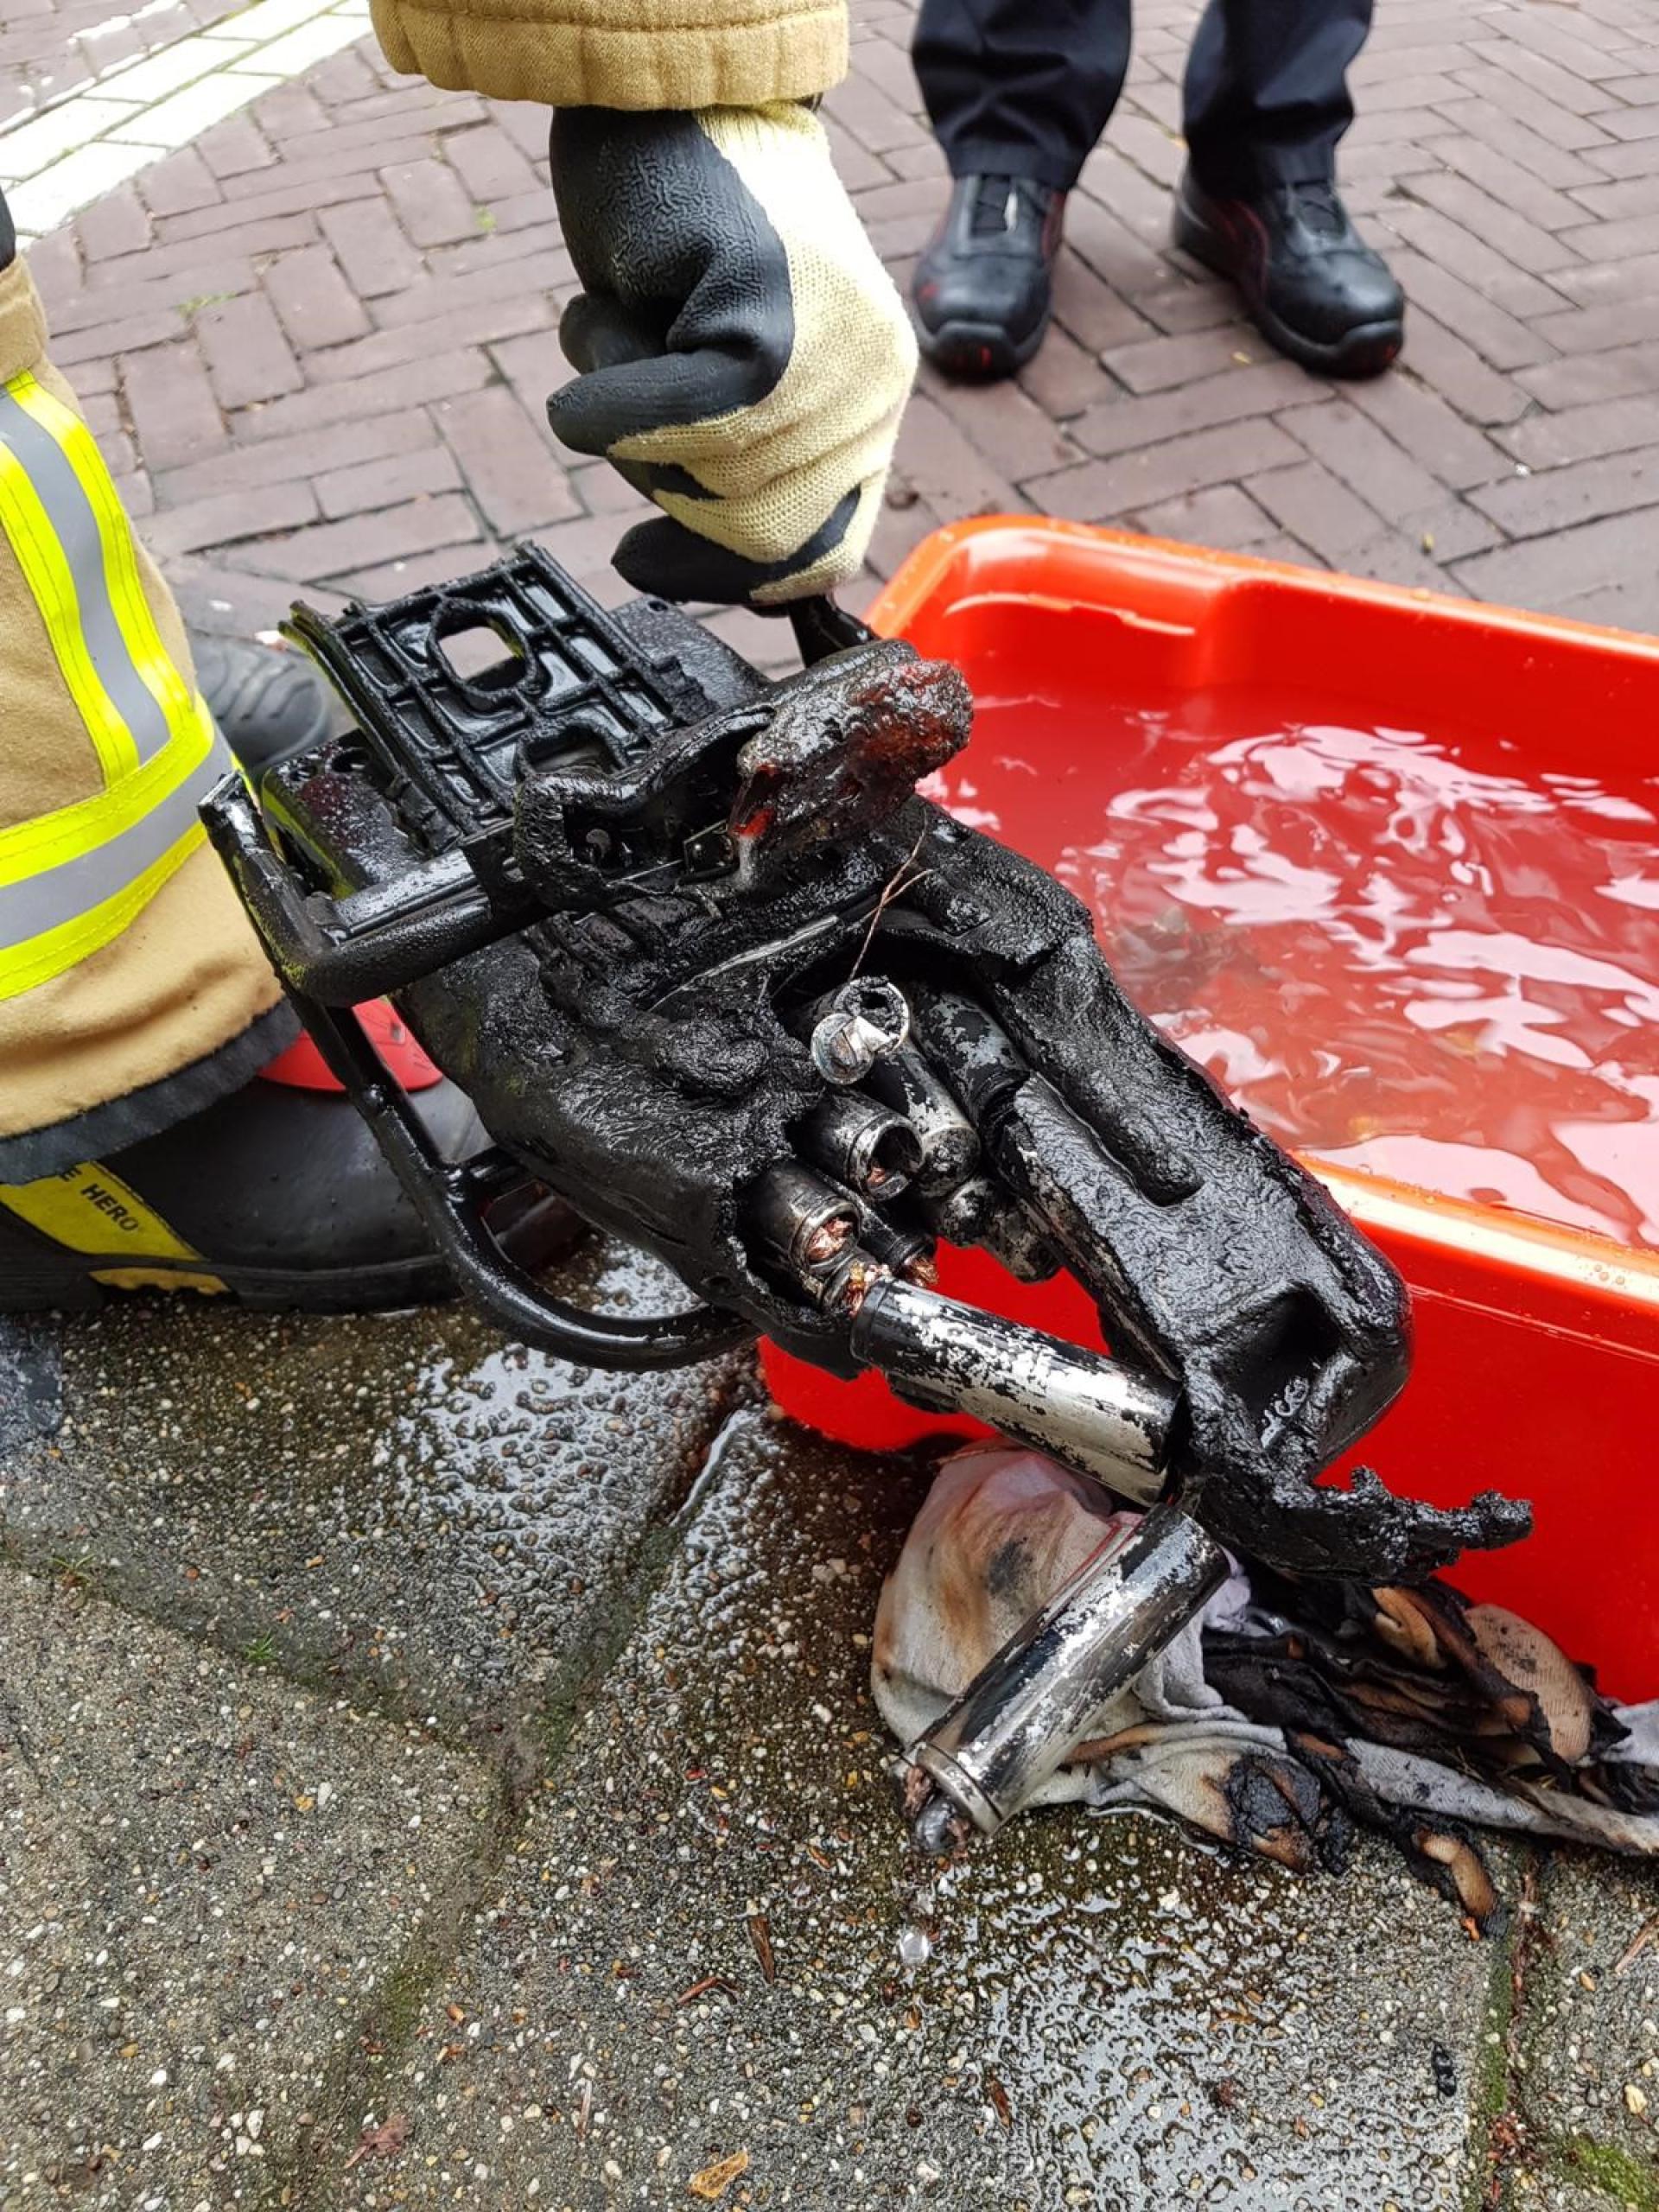 Accu van een fiets die brand heeft veroorzaakt